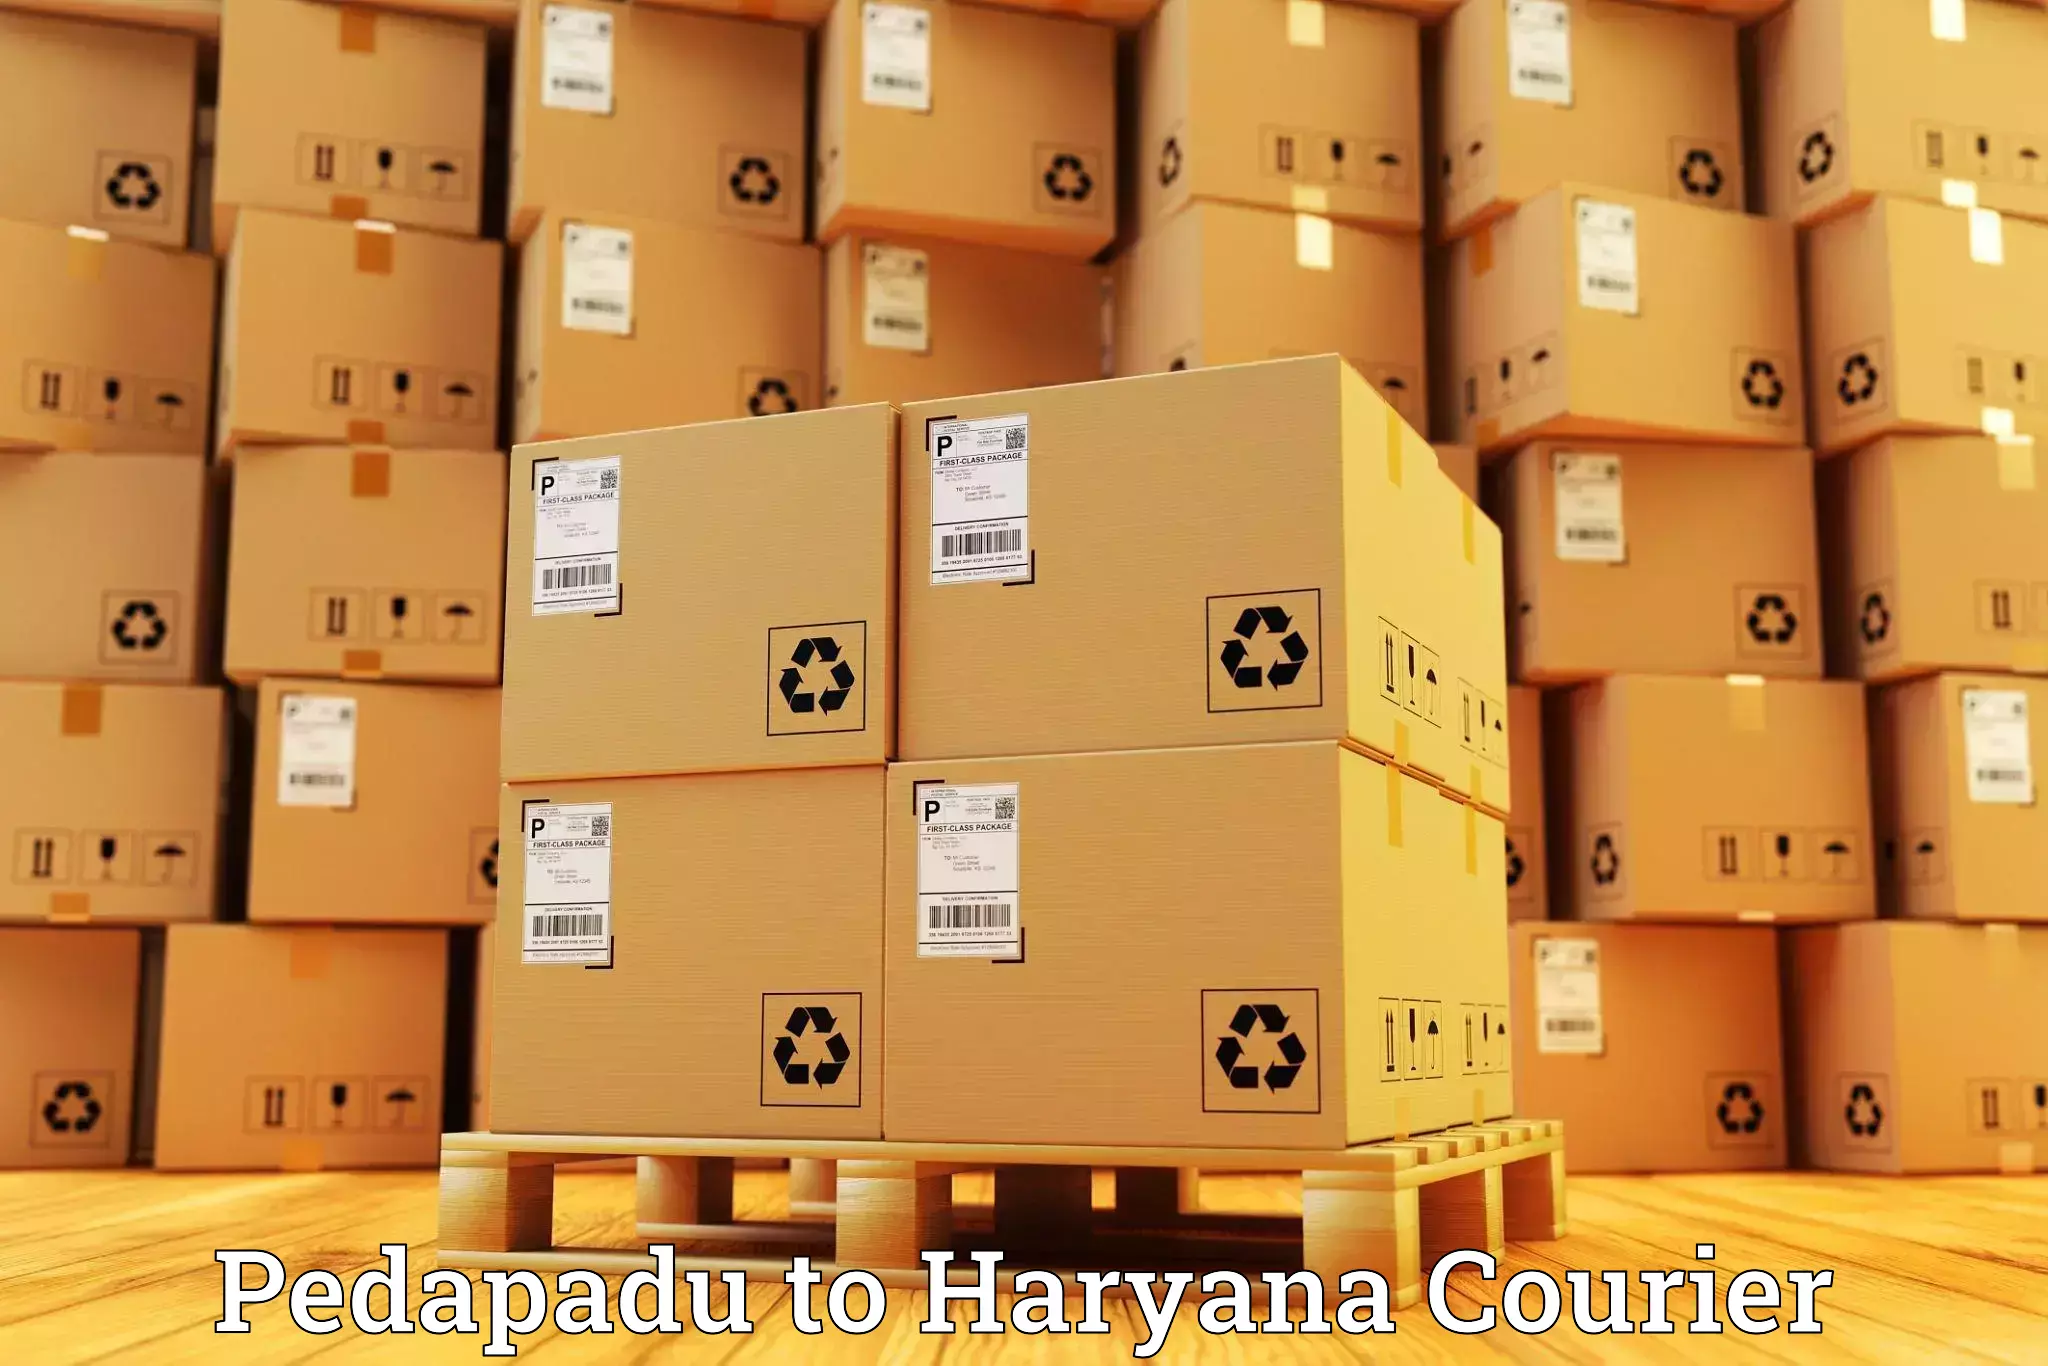 24-hour courier service Pedapadu to Gurugram